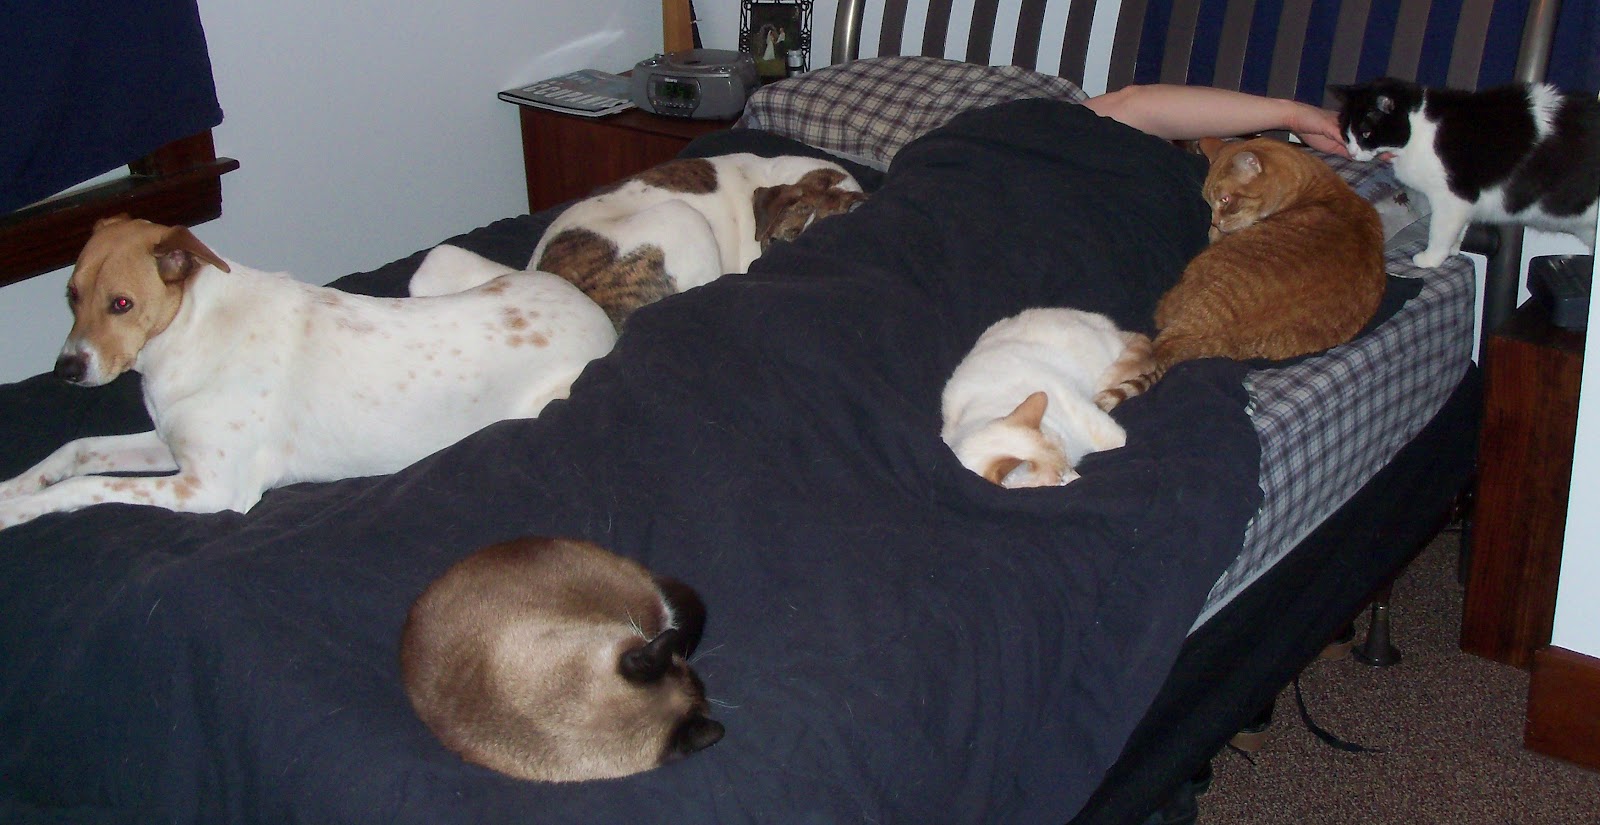 https://2.bp.blogspot.com/-SV364mBNhFo/T2_uY7c8UWI/AAAAAAAAAKA/6d0OSX4Yn6Y/s1600/rsz_cats_&_dogs_on_the_bed_march_2012_005.jpg